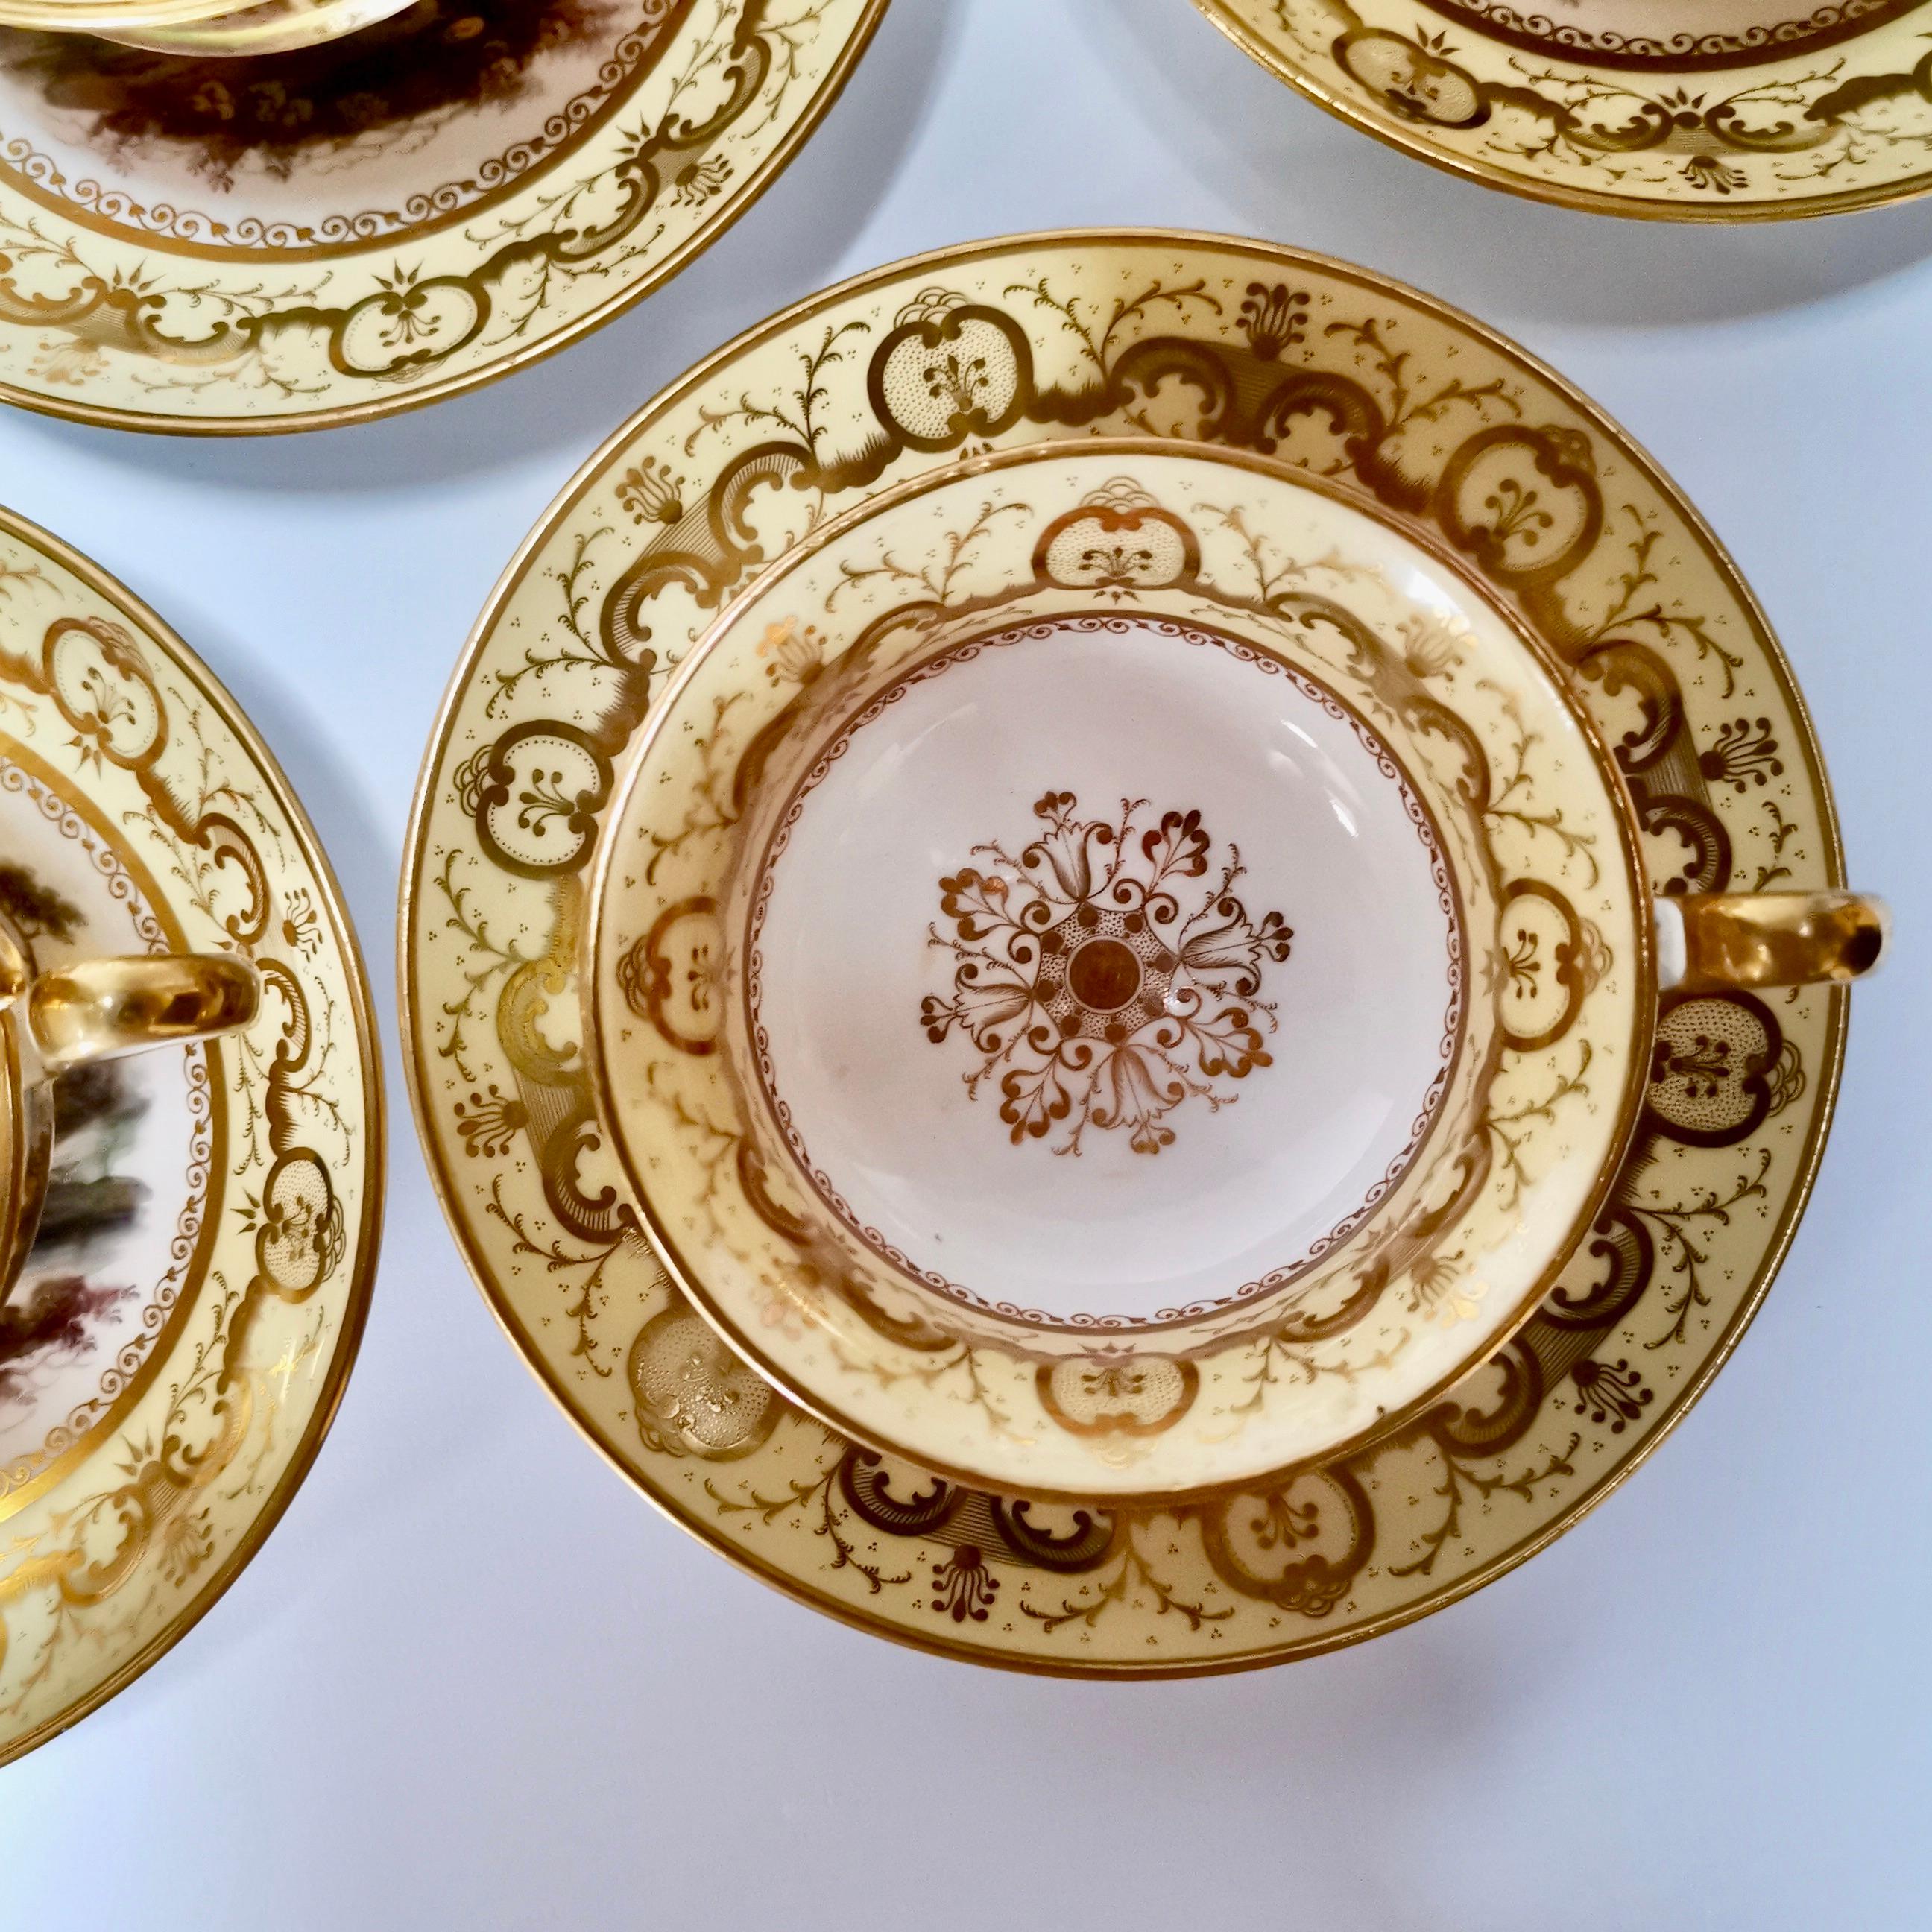 Minton Porcelain Tea Service, Yellow with Landscapes, Provenance Regency 3